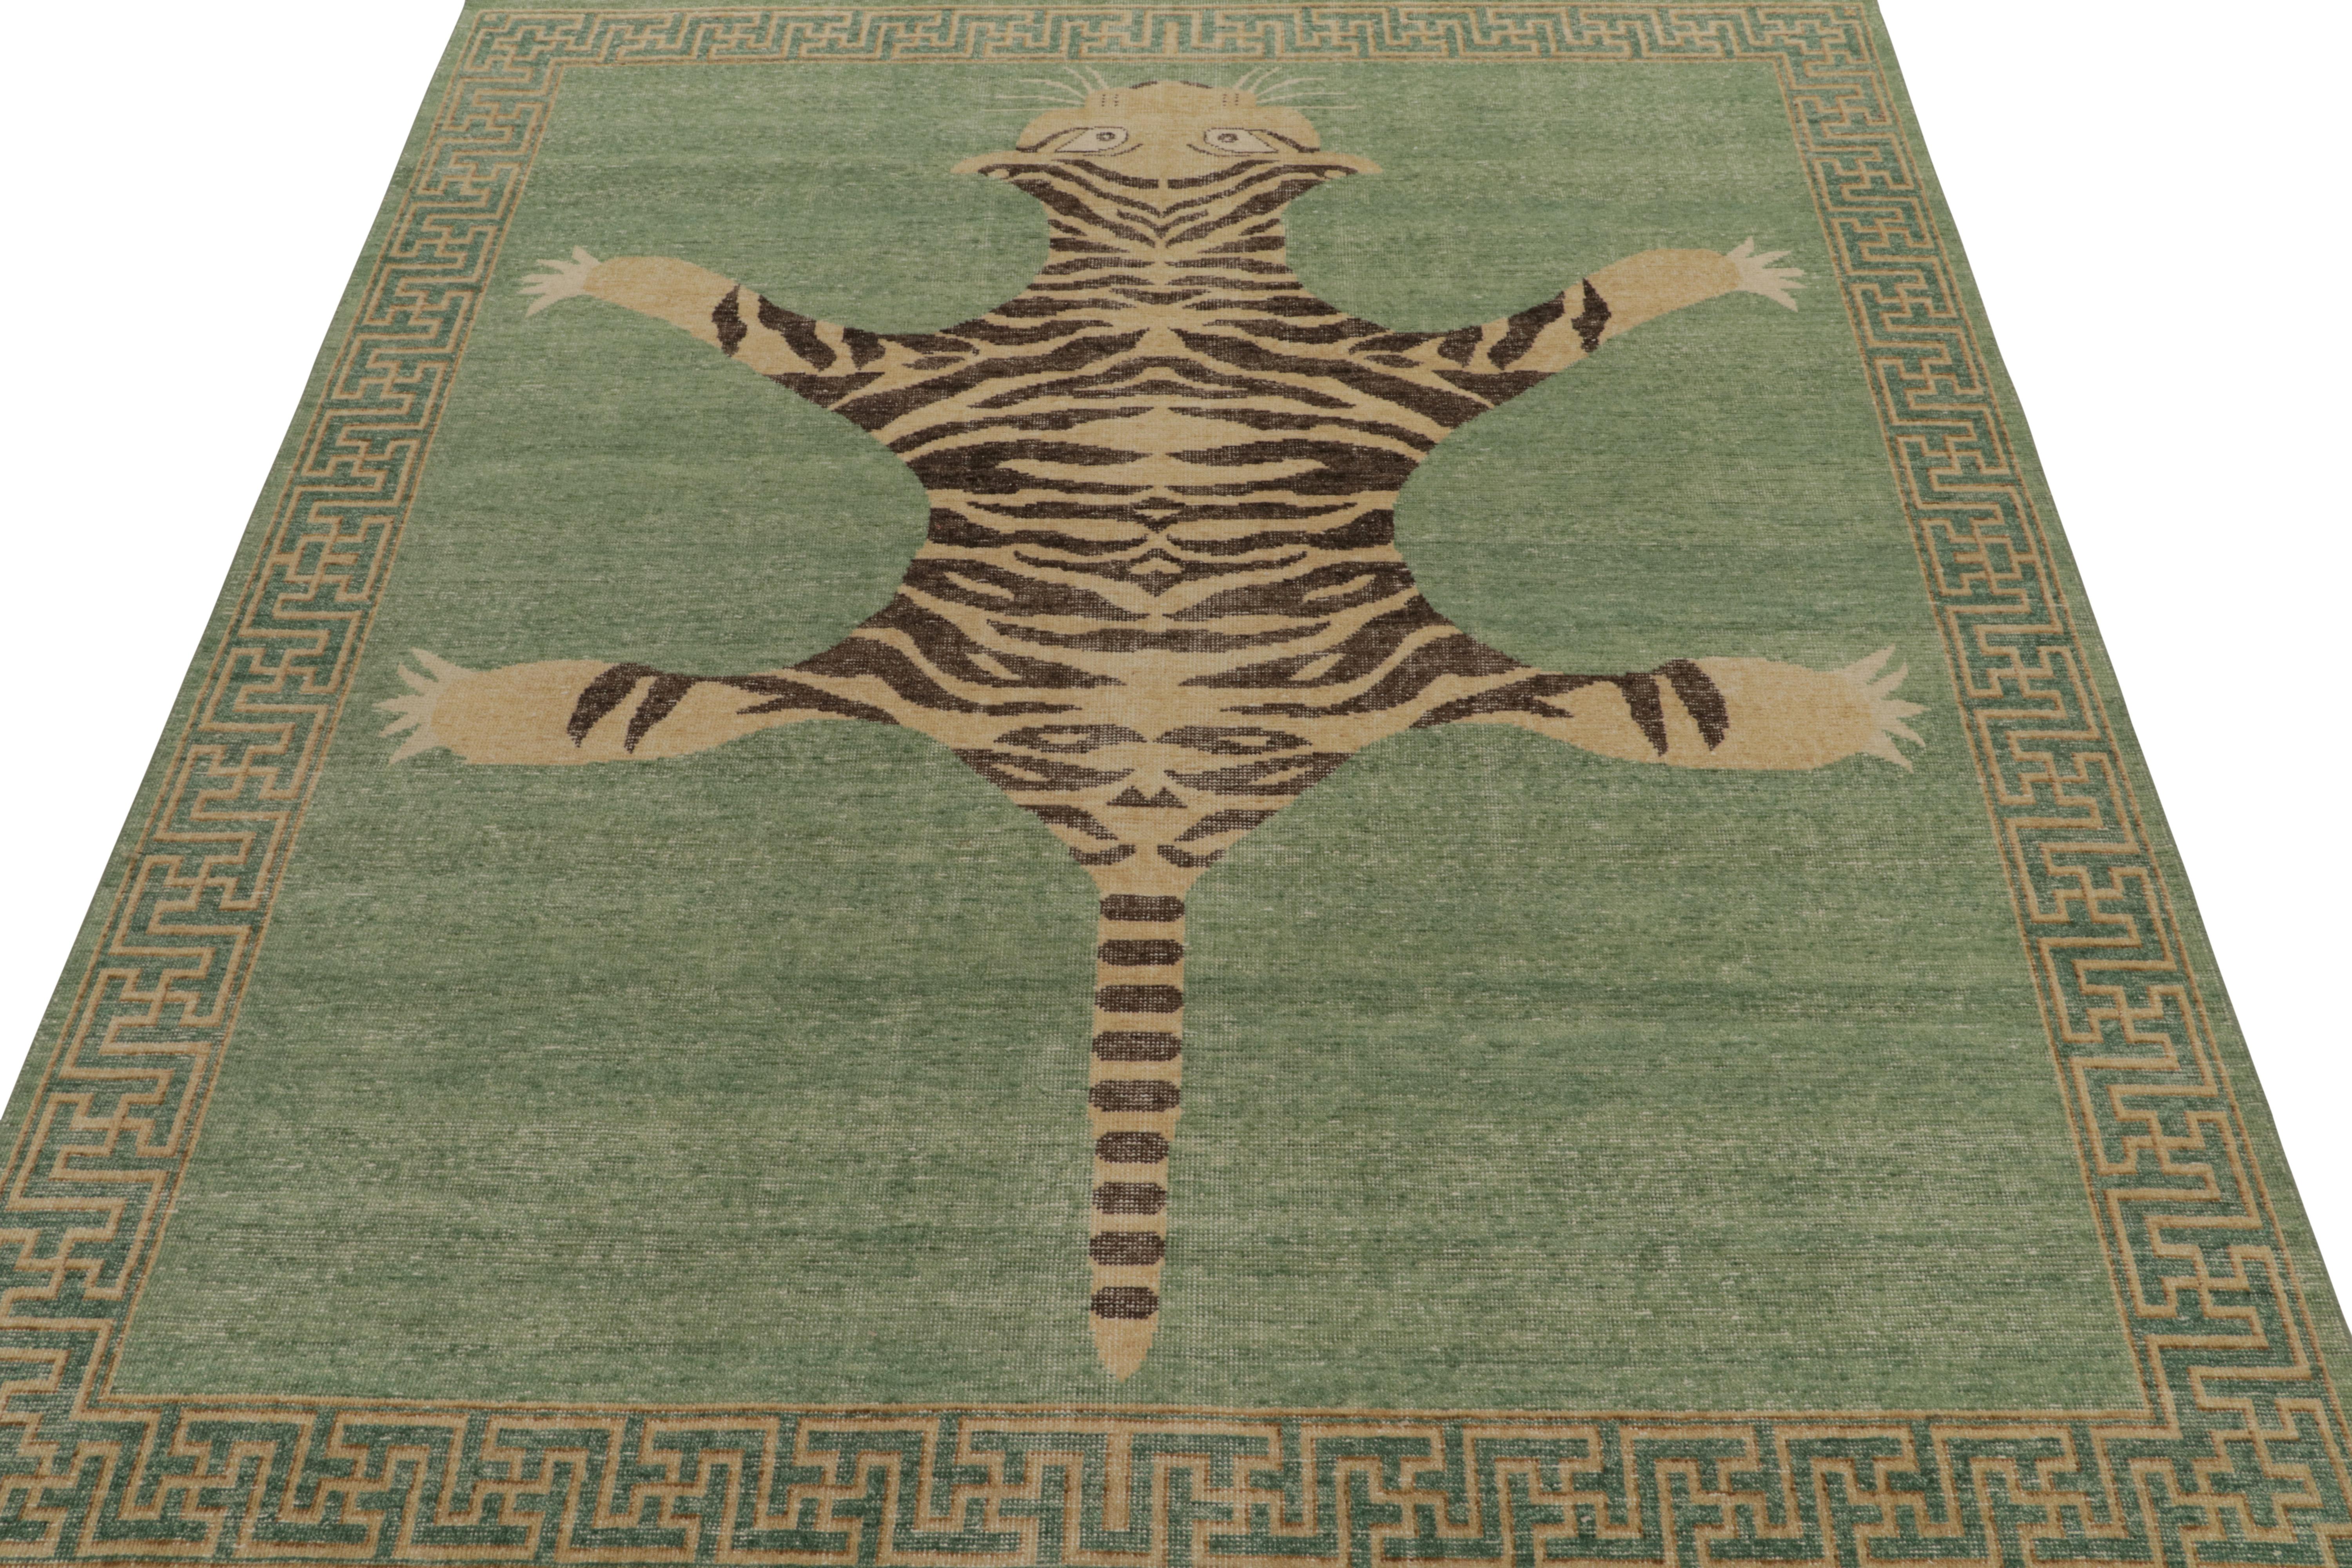 Indien Tapis & Kilims - Tapis de style tigre en peau de tigre vieillie en vert, beige et noir - Pictorial en vente